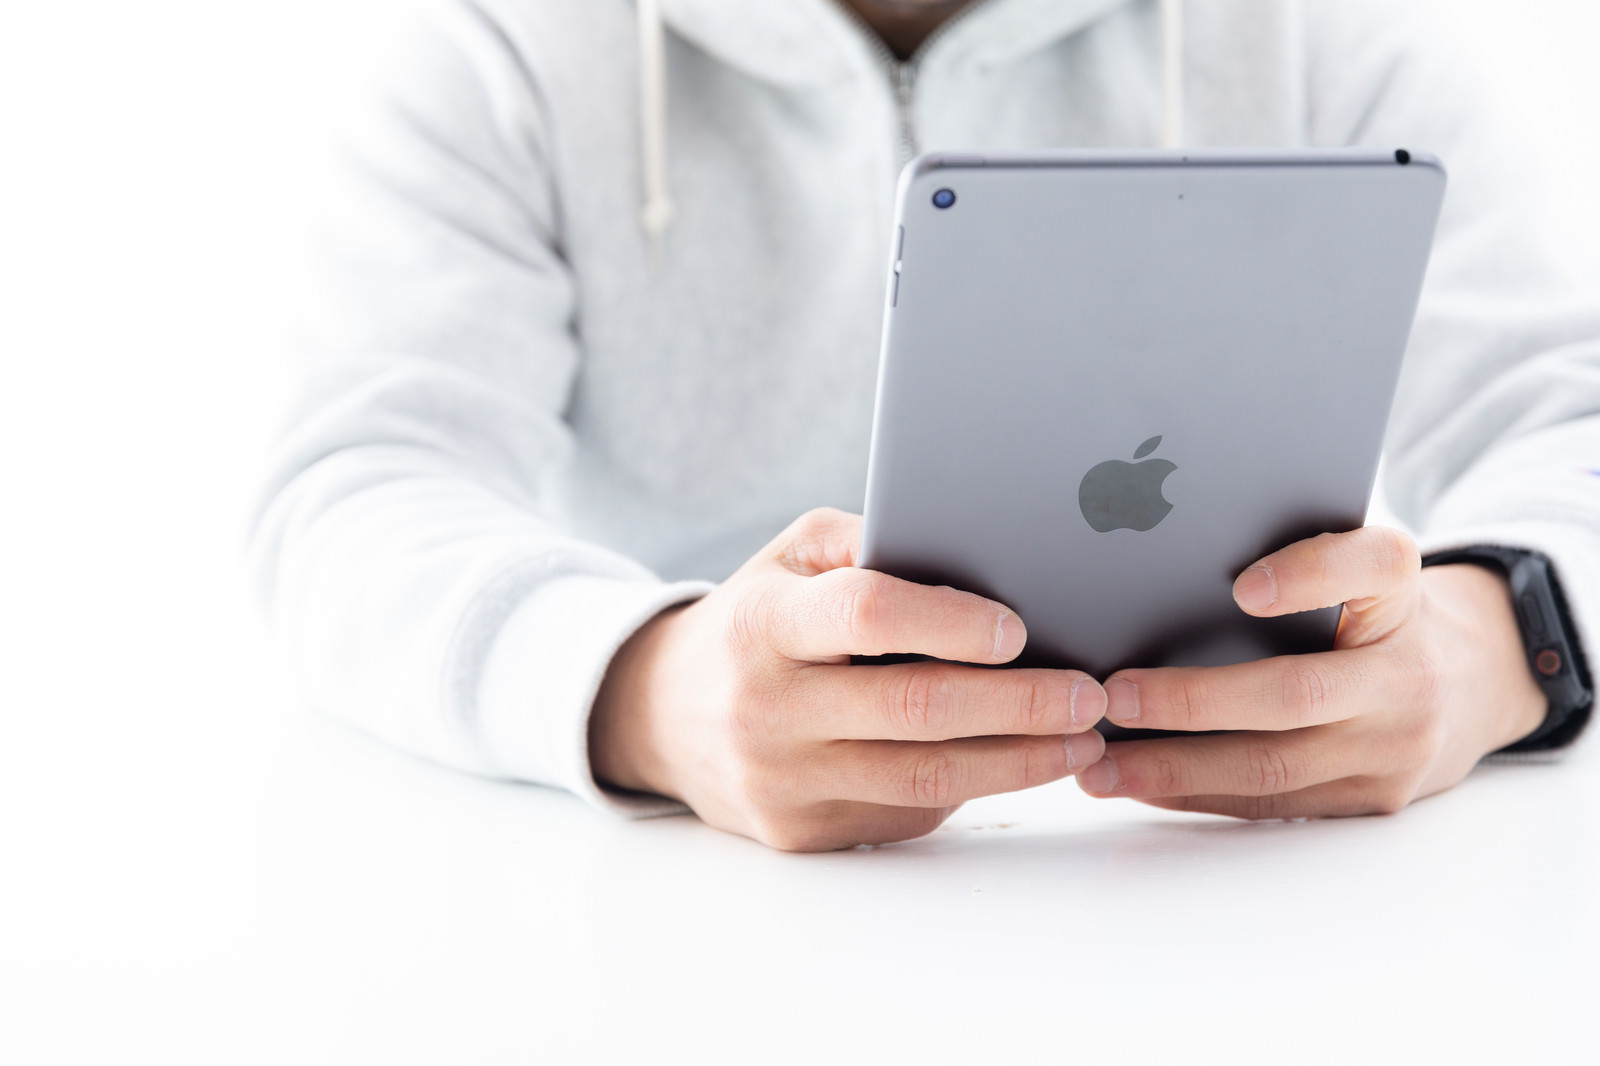 「新型iPadminiを両手で持った感触 | フリー素材のぱくたそ」の写真